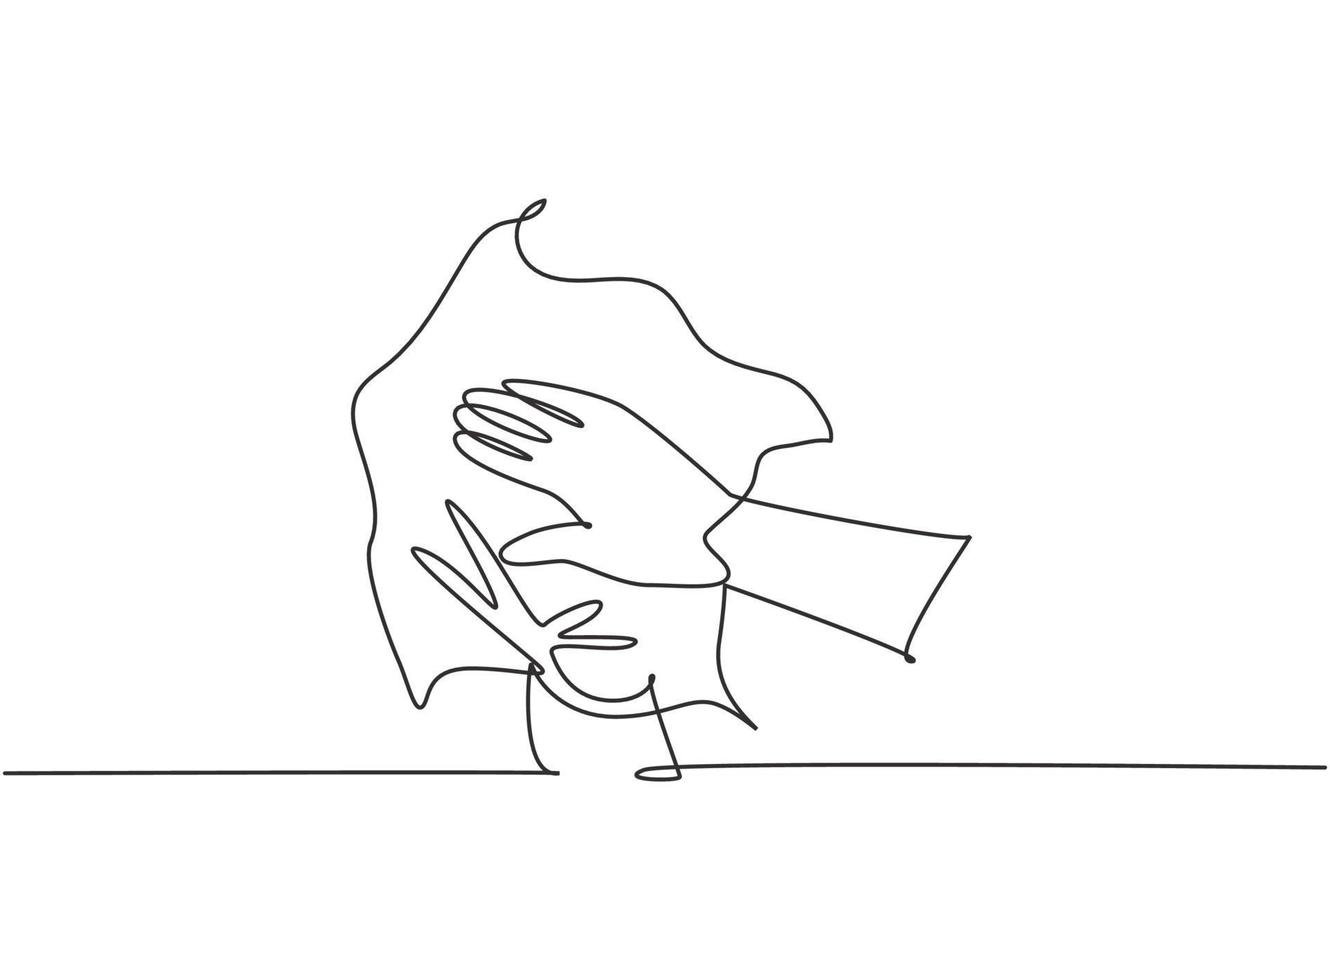 dibujo de una sola línea de doce pasos para lavarse las manos secándose las palmas con una toalla. Higiene de manos para evitar el virus corona. Ilustración de vector gráfico de diseño de dibujo de línea continua moderna.